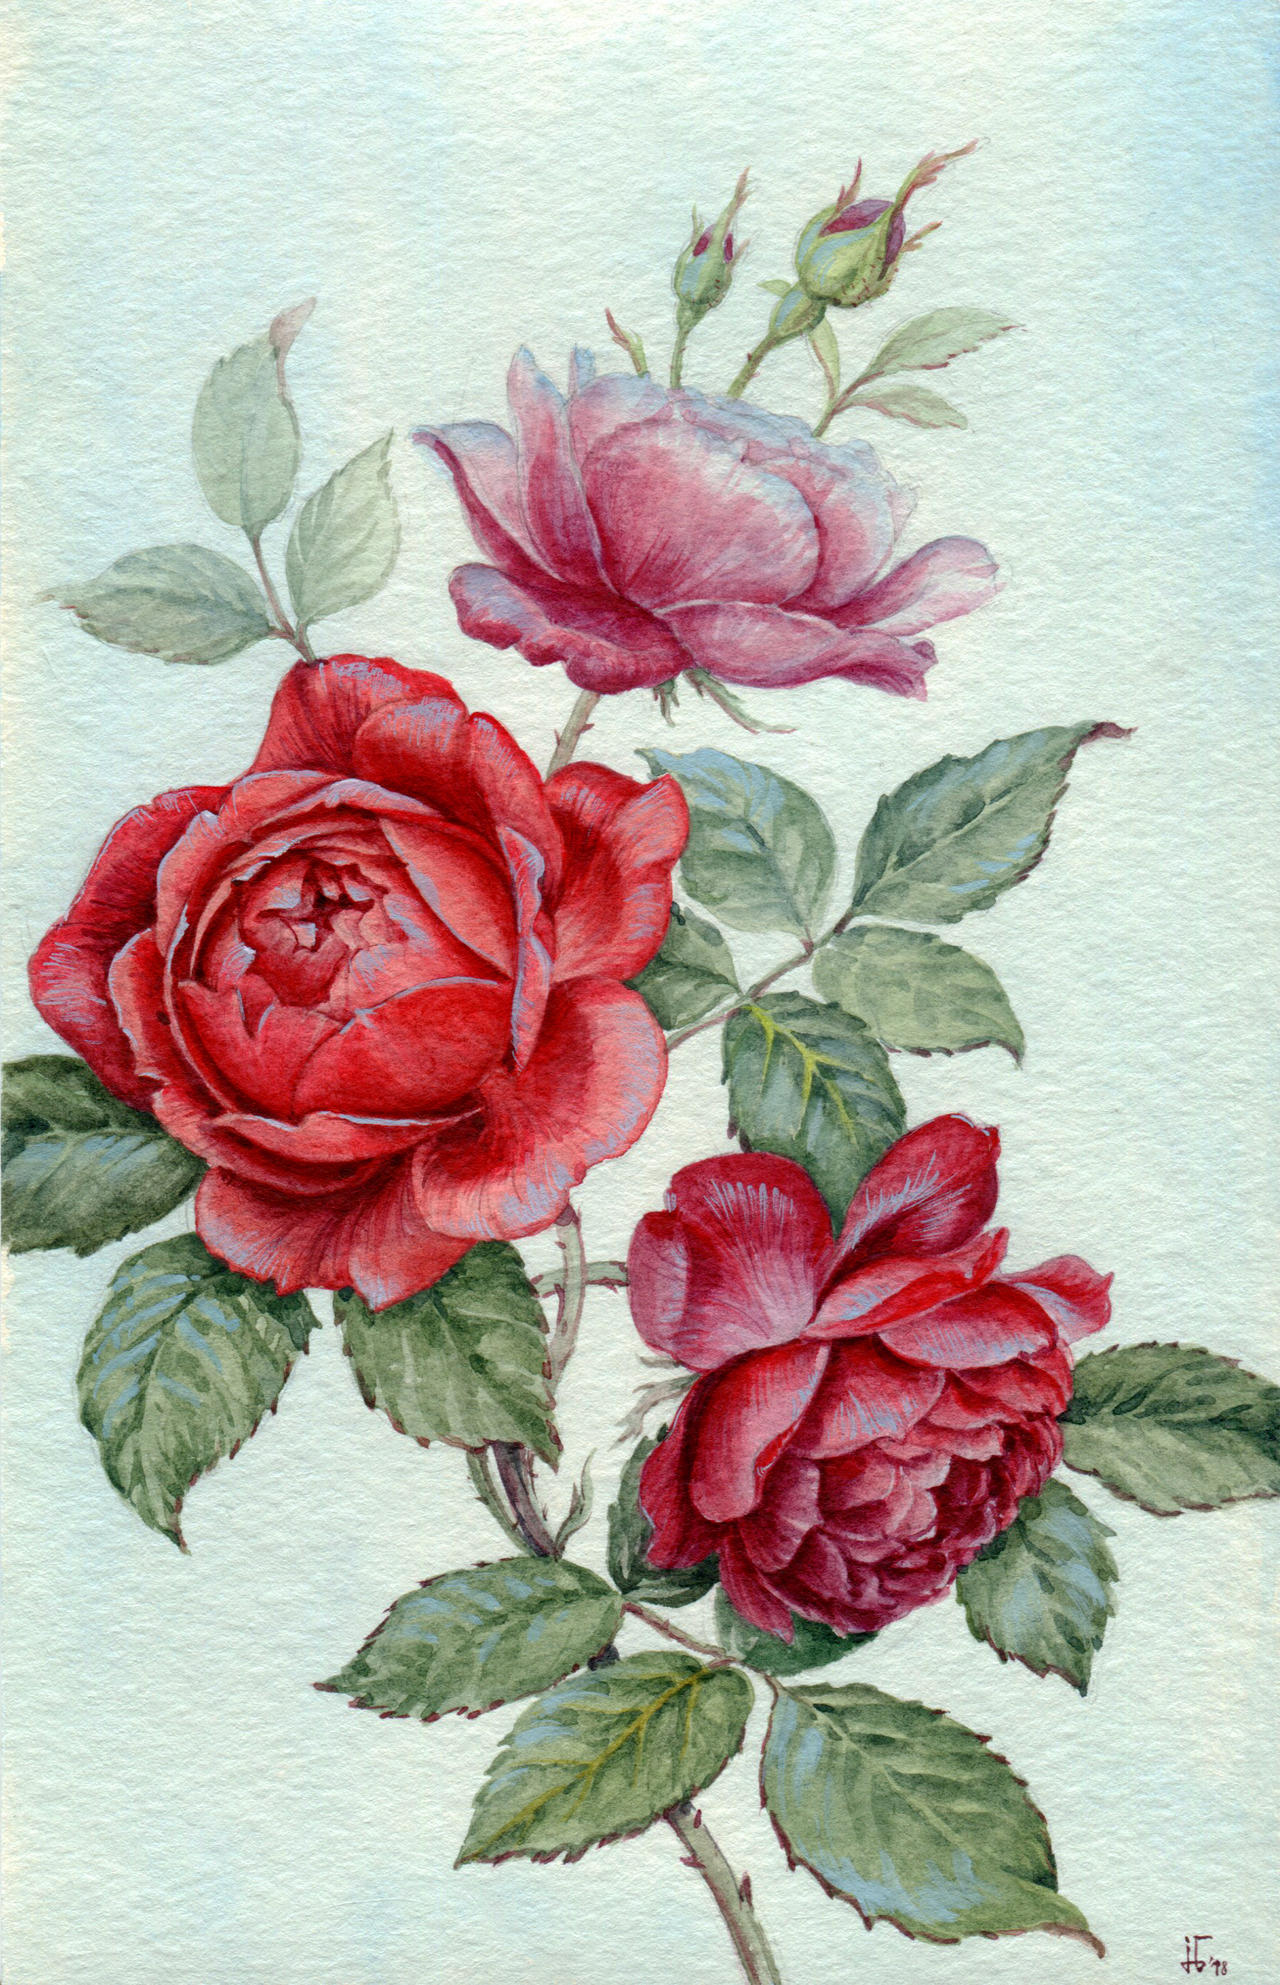 red roses by jennomat on DeviantArt